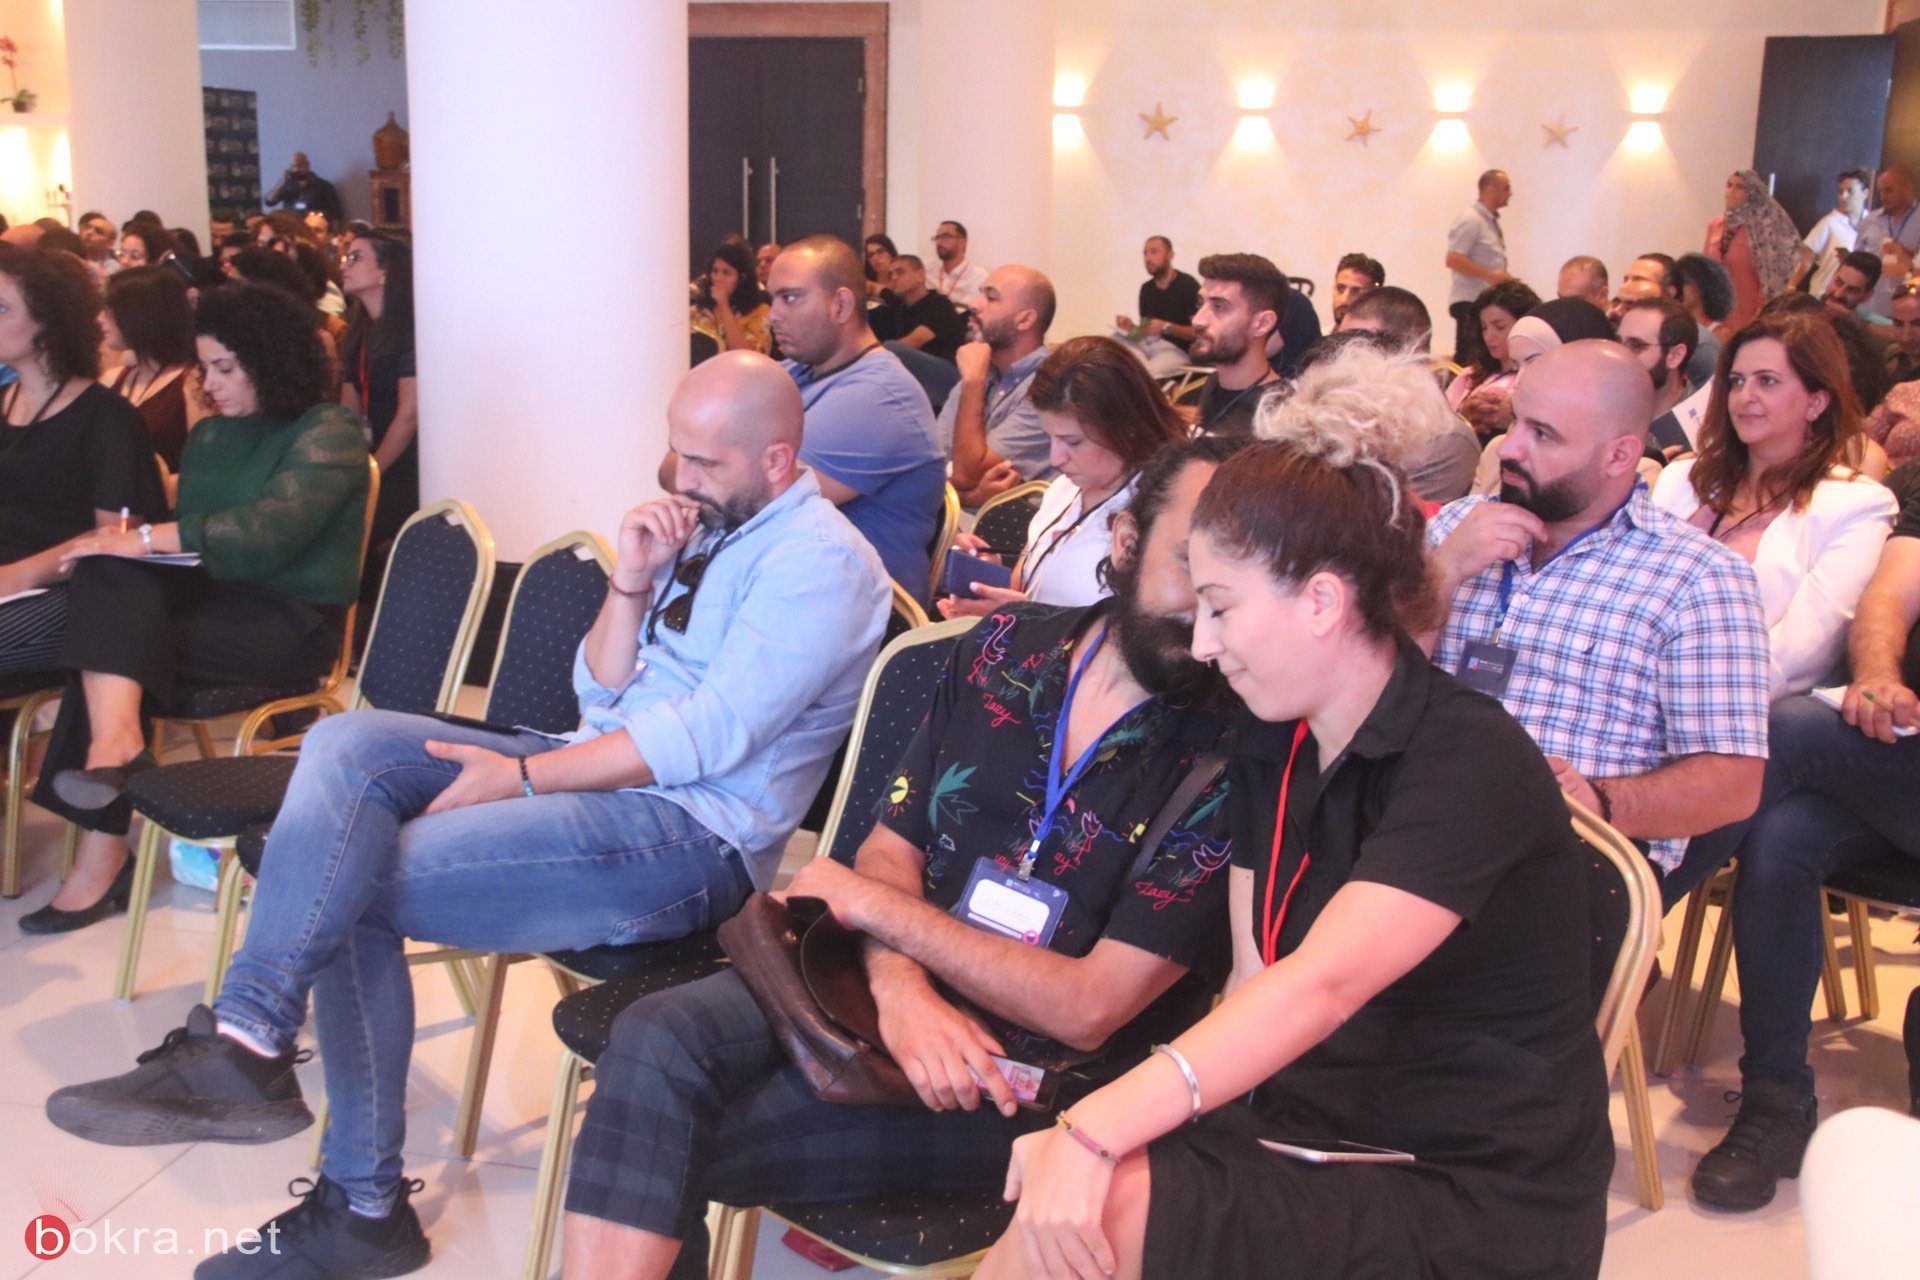 حيفا: مشاركة واسعة في مؤتمر "وصول" حول آخر التطورات في قنوات التسويق الرقمي-12